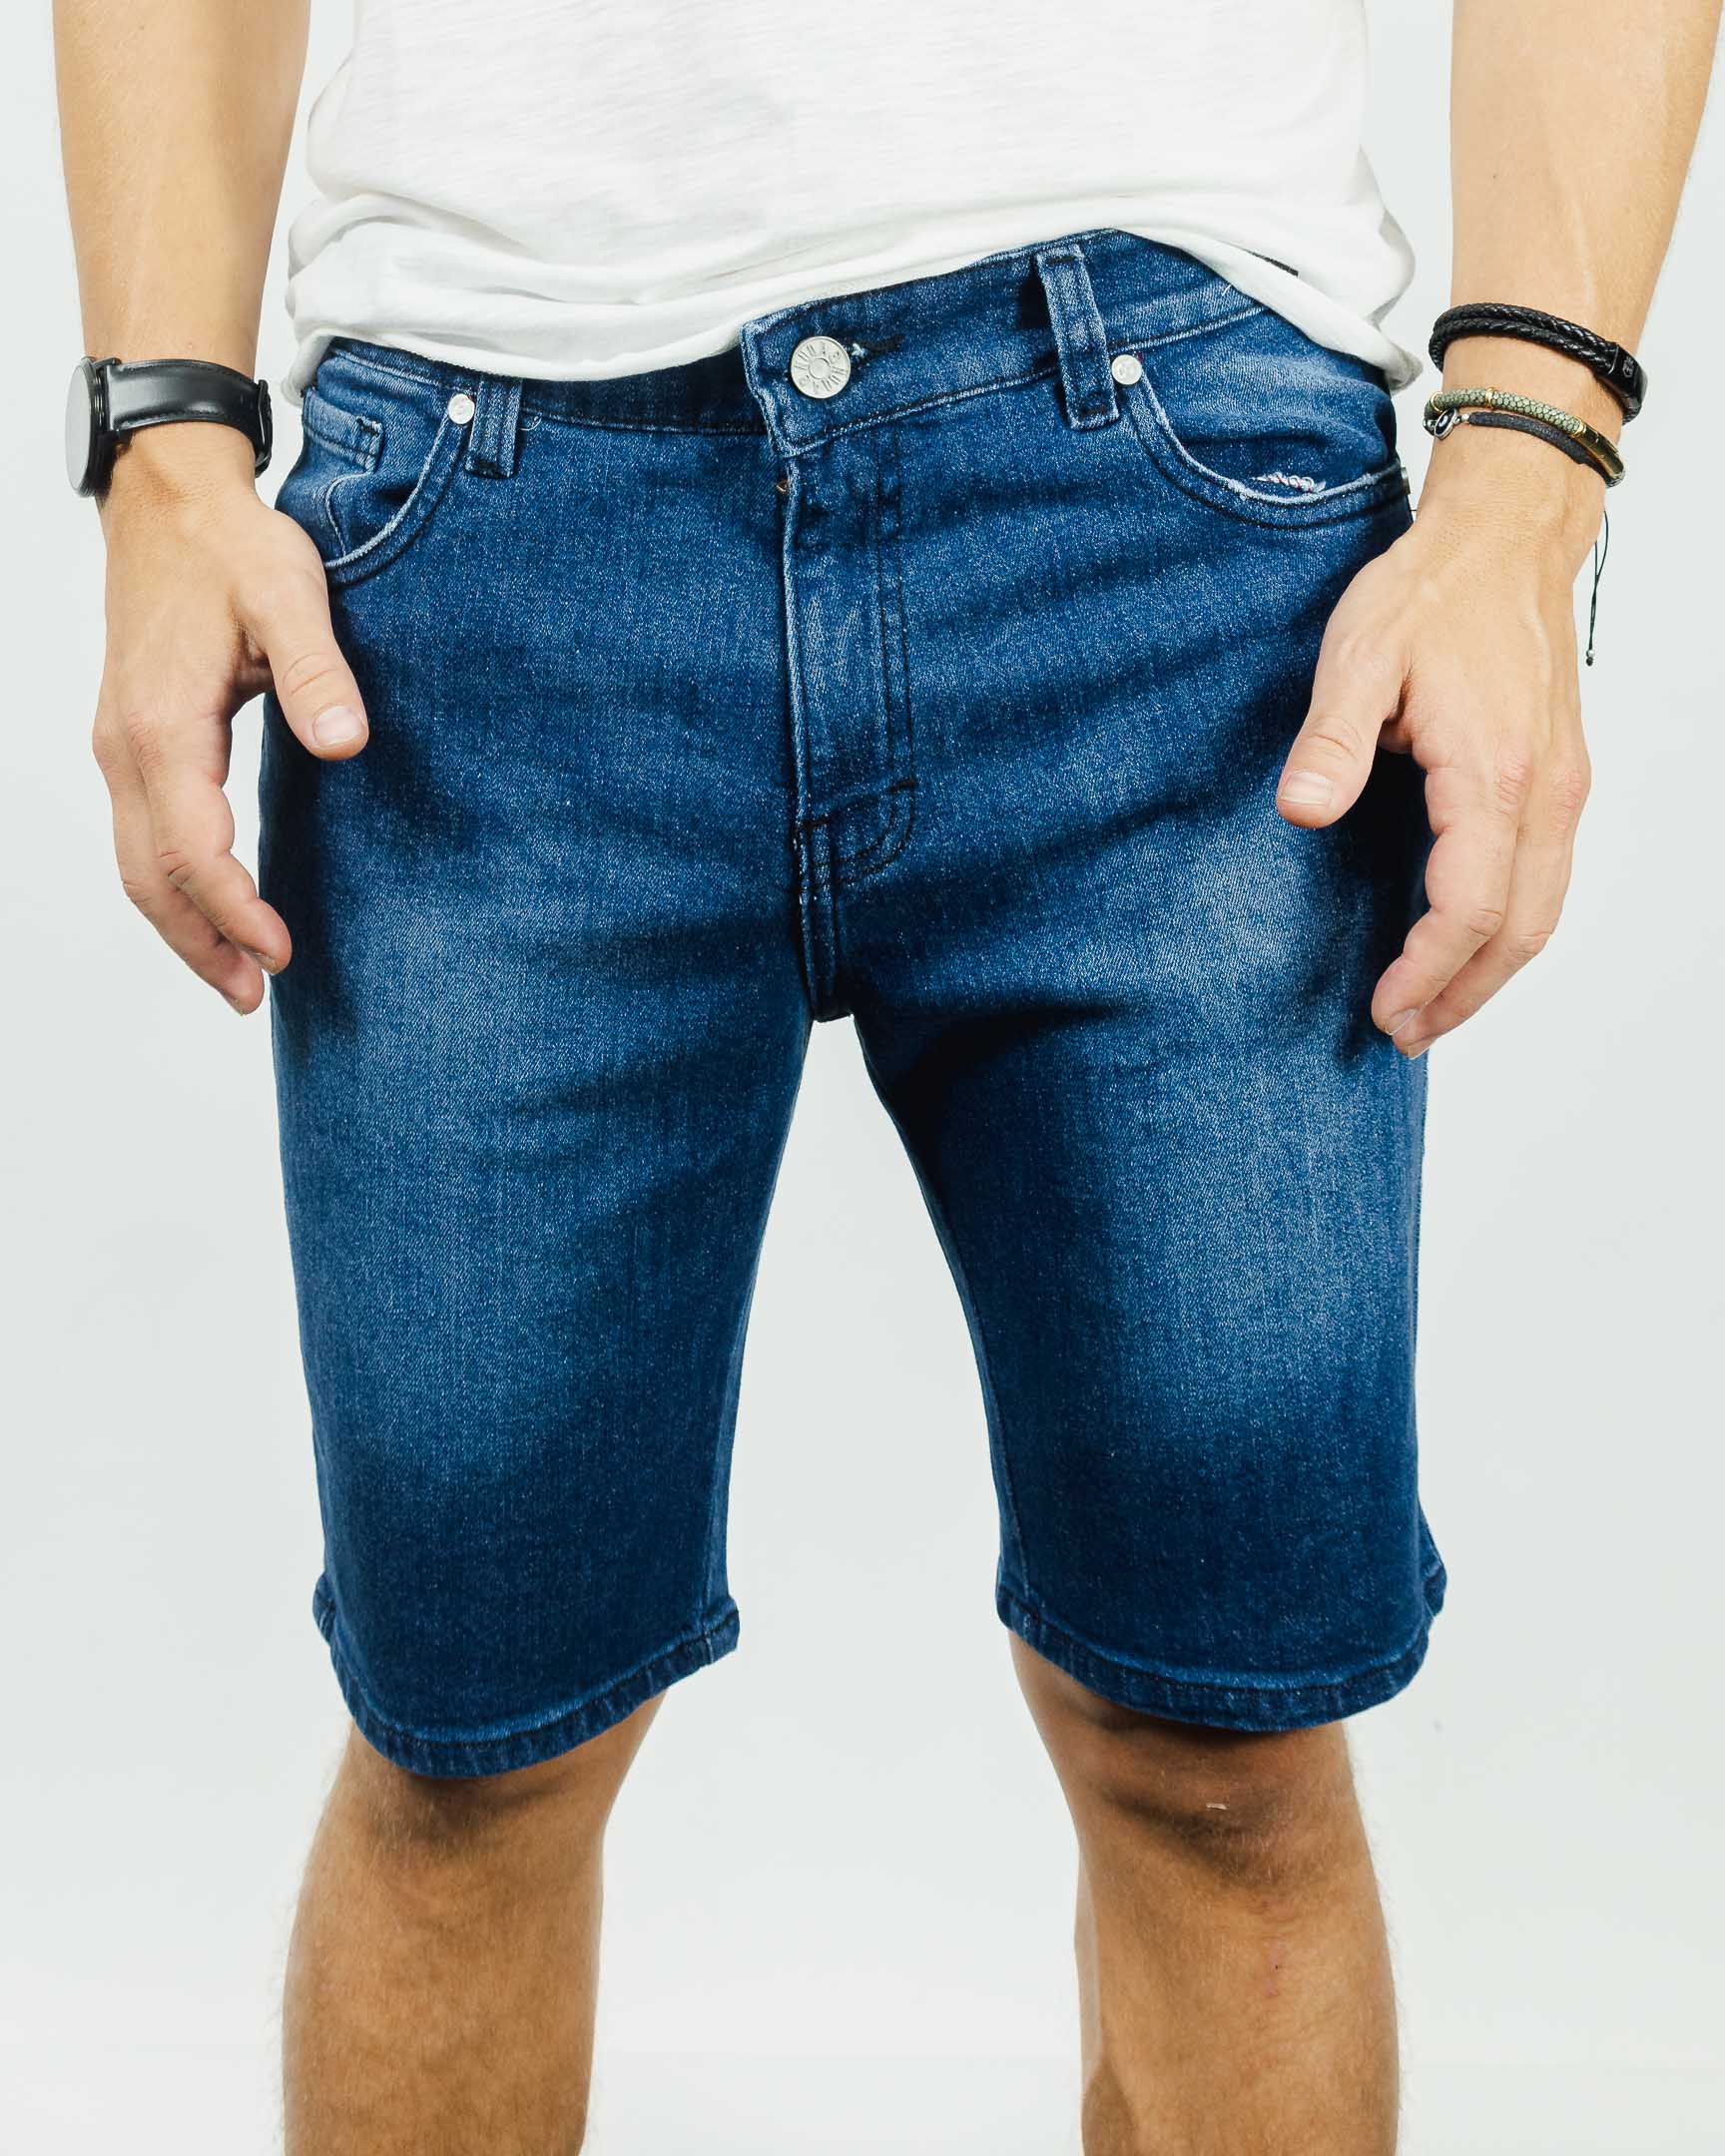 93721 - short jeans curto cintura alta - 93721 - short jeans curto